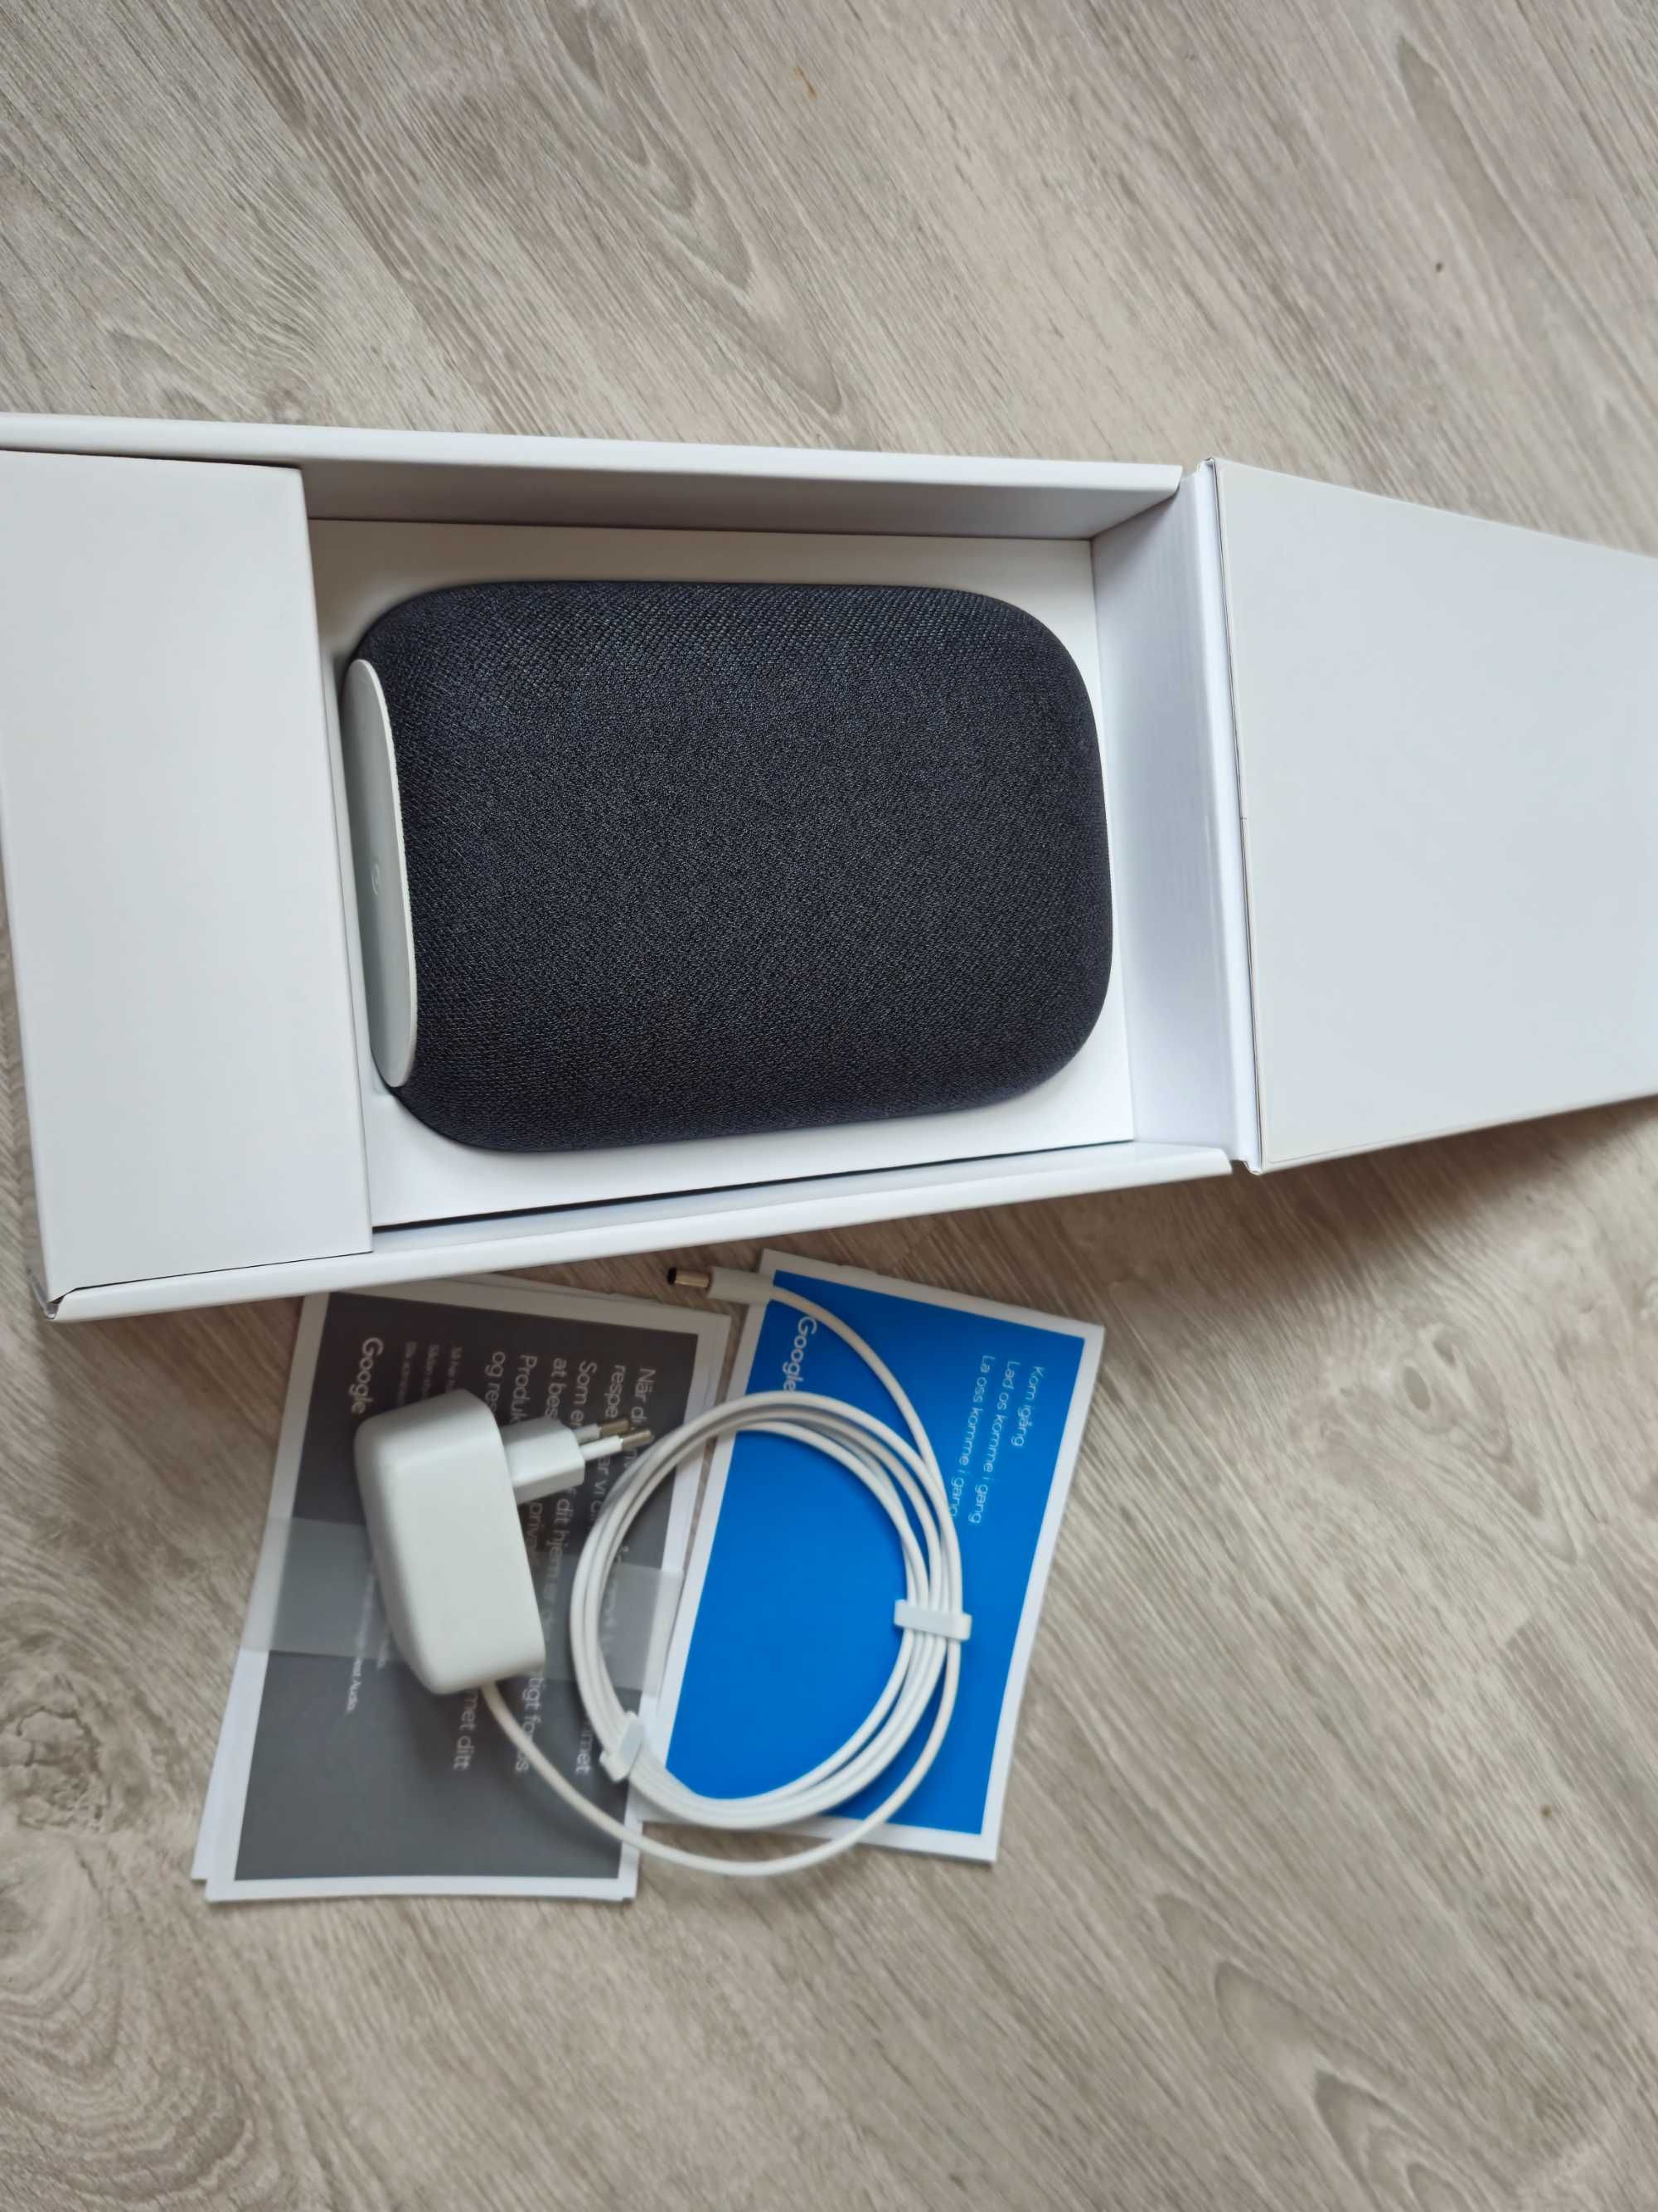 Google Nest Audio - Smart Speaker